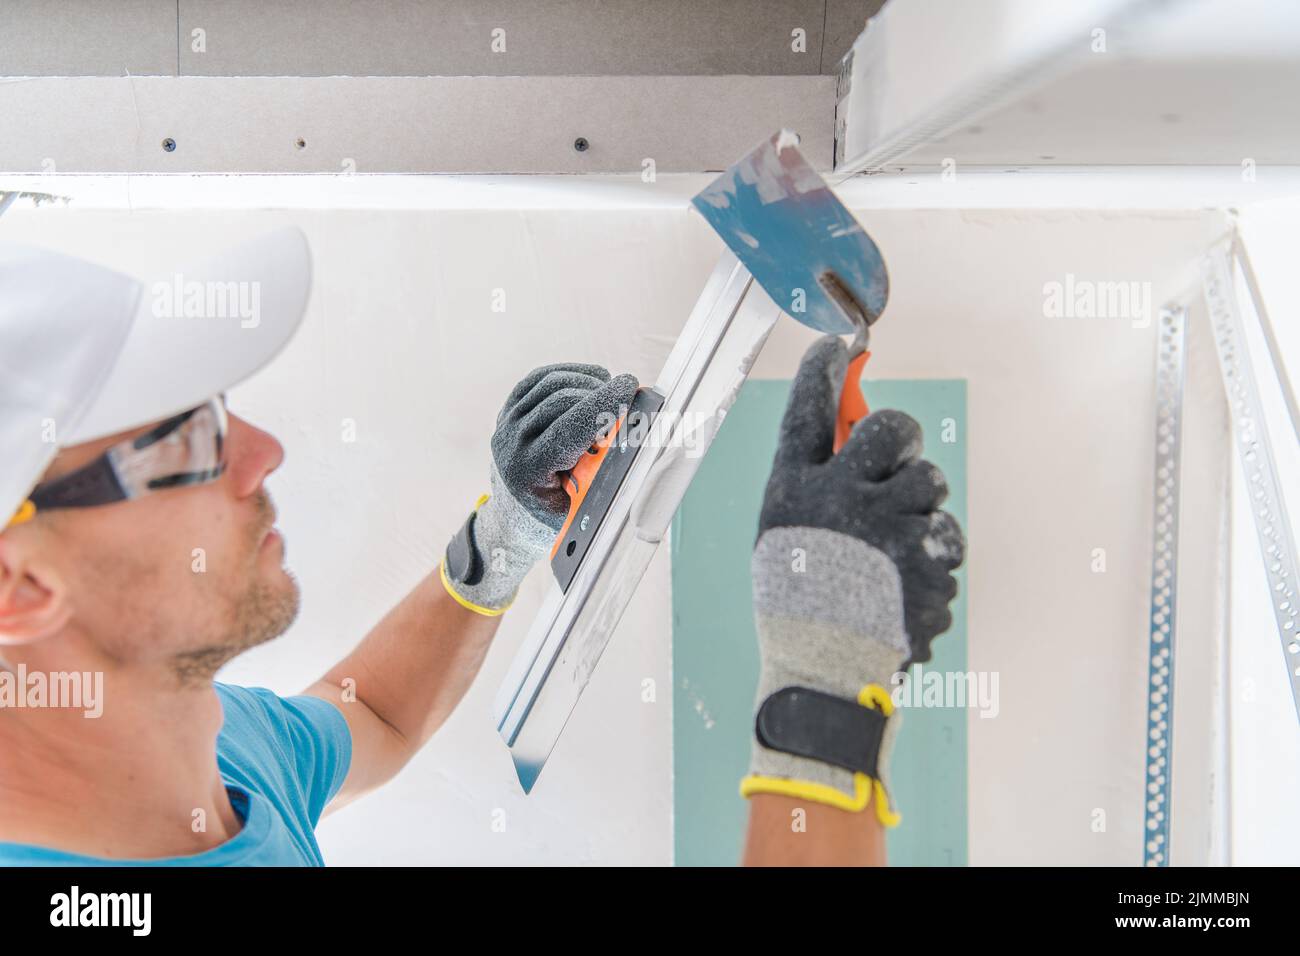 Primo piano del lavoratore maschile che applica il mastice da parete in gesso con lo strumento Scrapper Putty Knife. Lavori di ristrutturazione della casa tema. Foto Stock